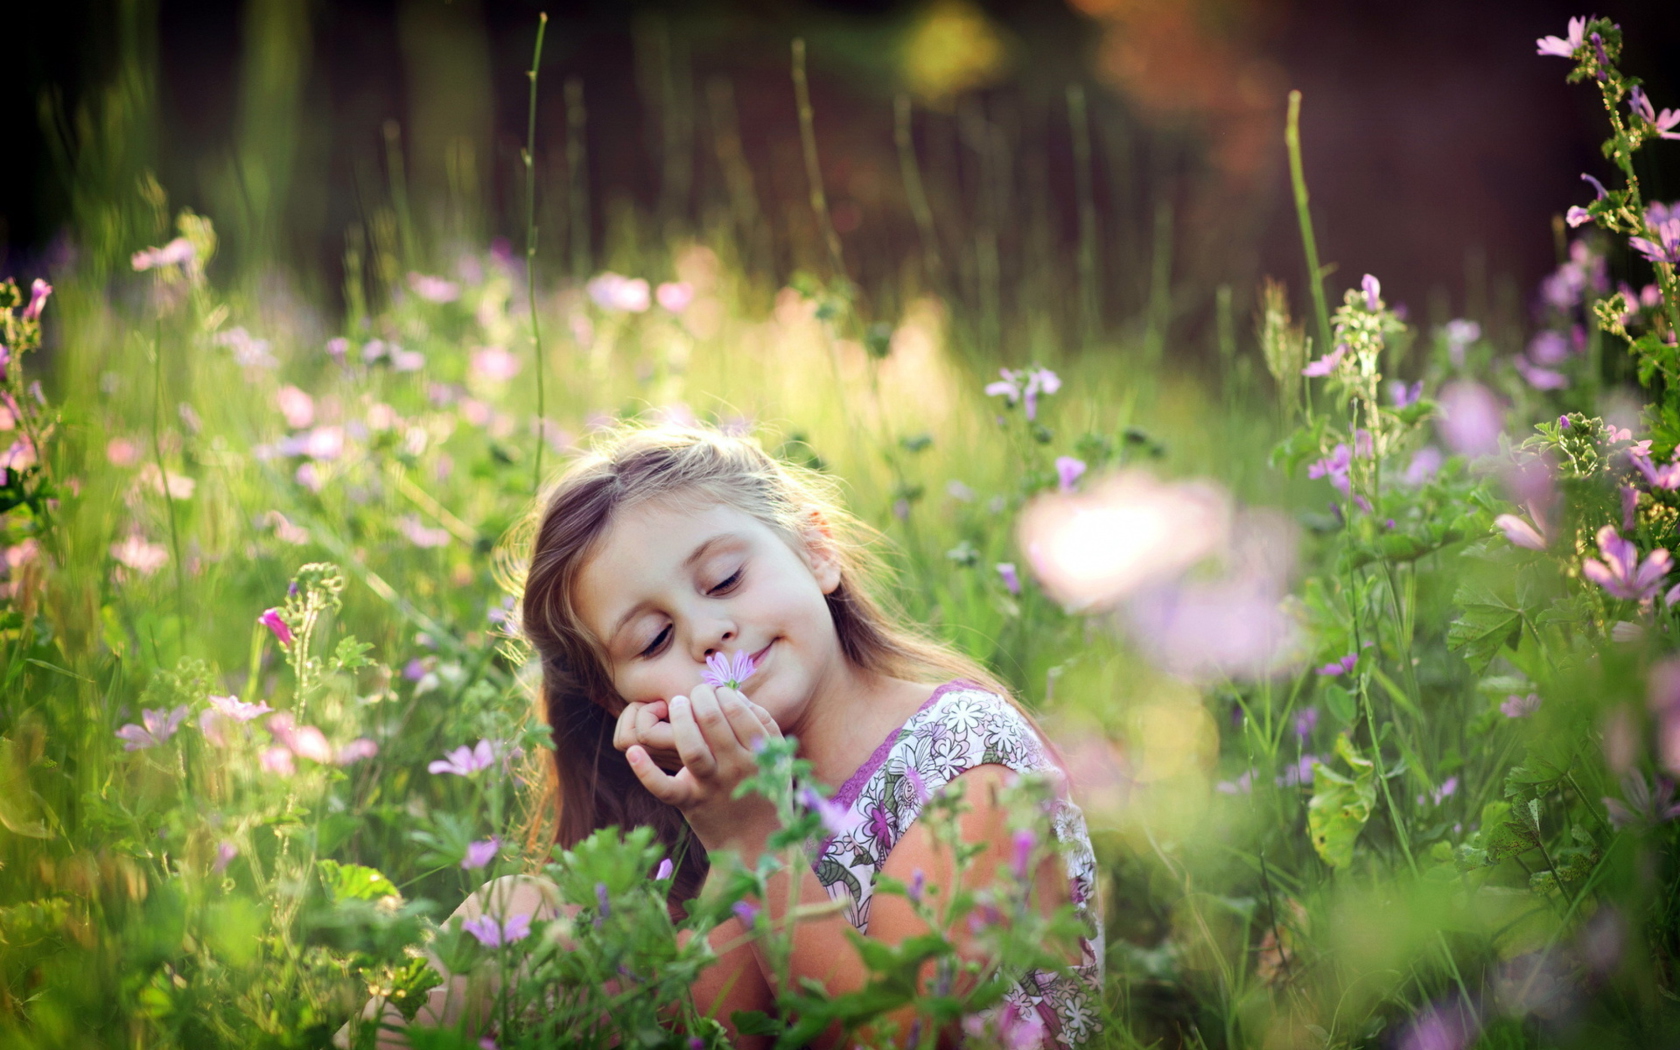 Обои Little Girl Enjoying Nature 1680x1050